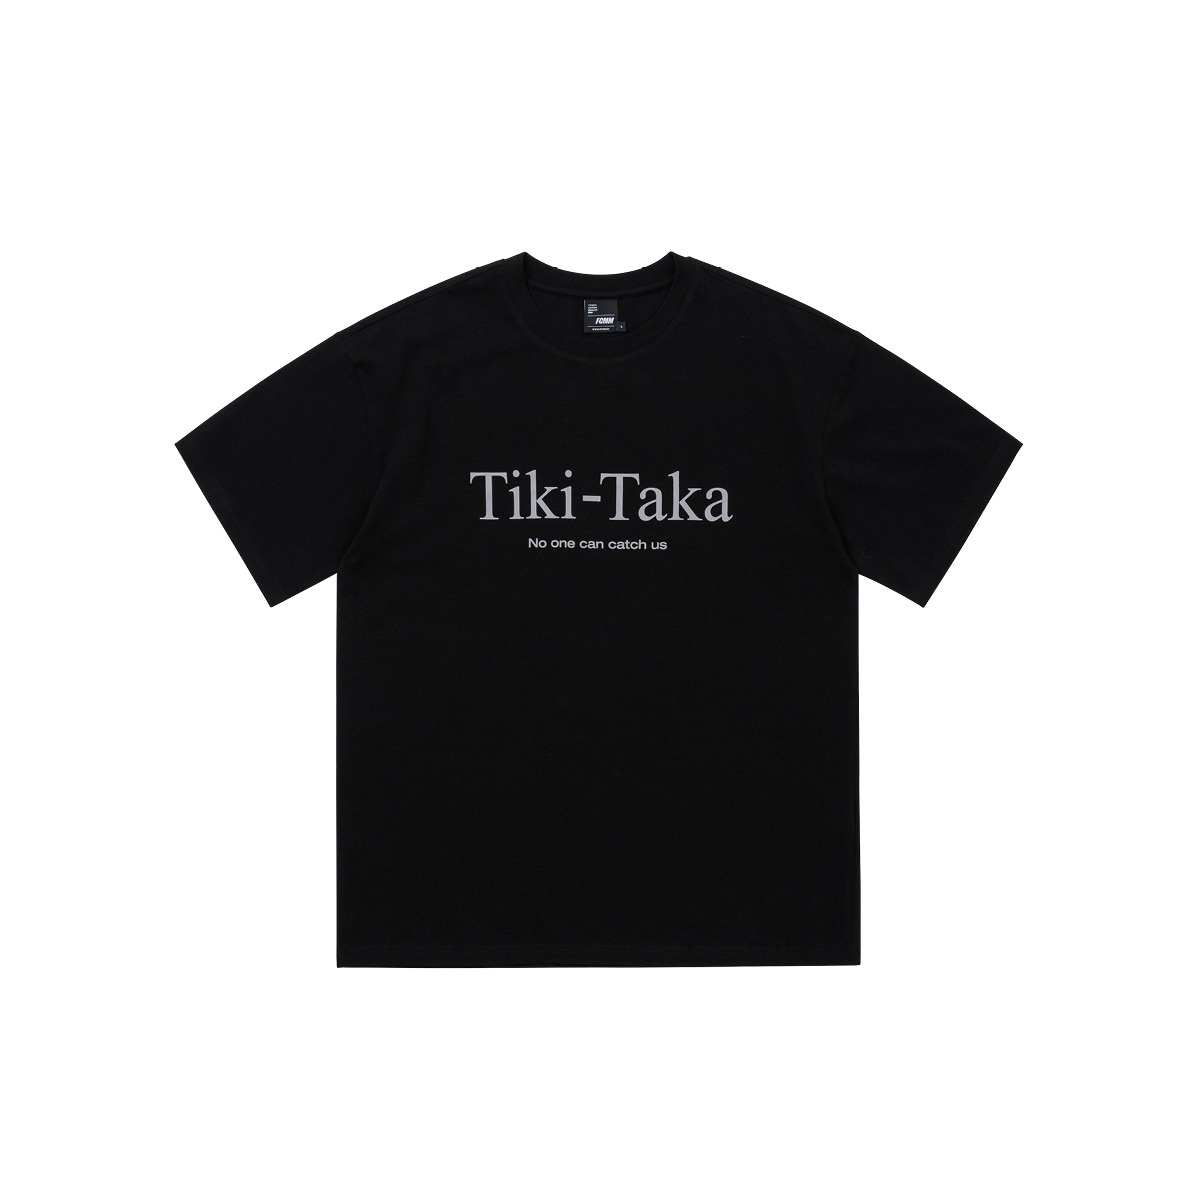 풋볼 티키타카 티셔츠 - 블랙